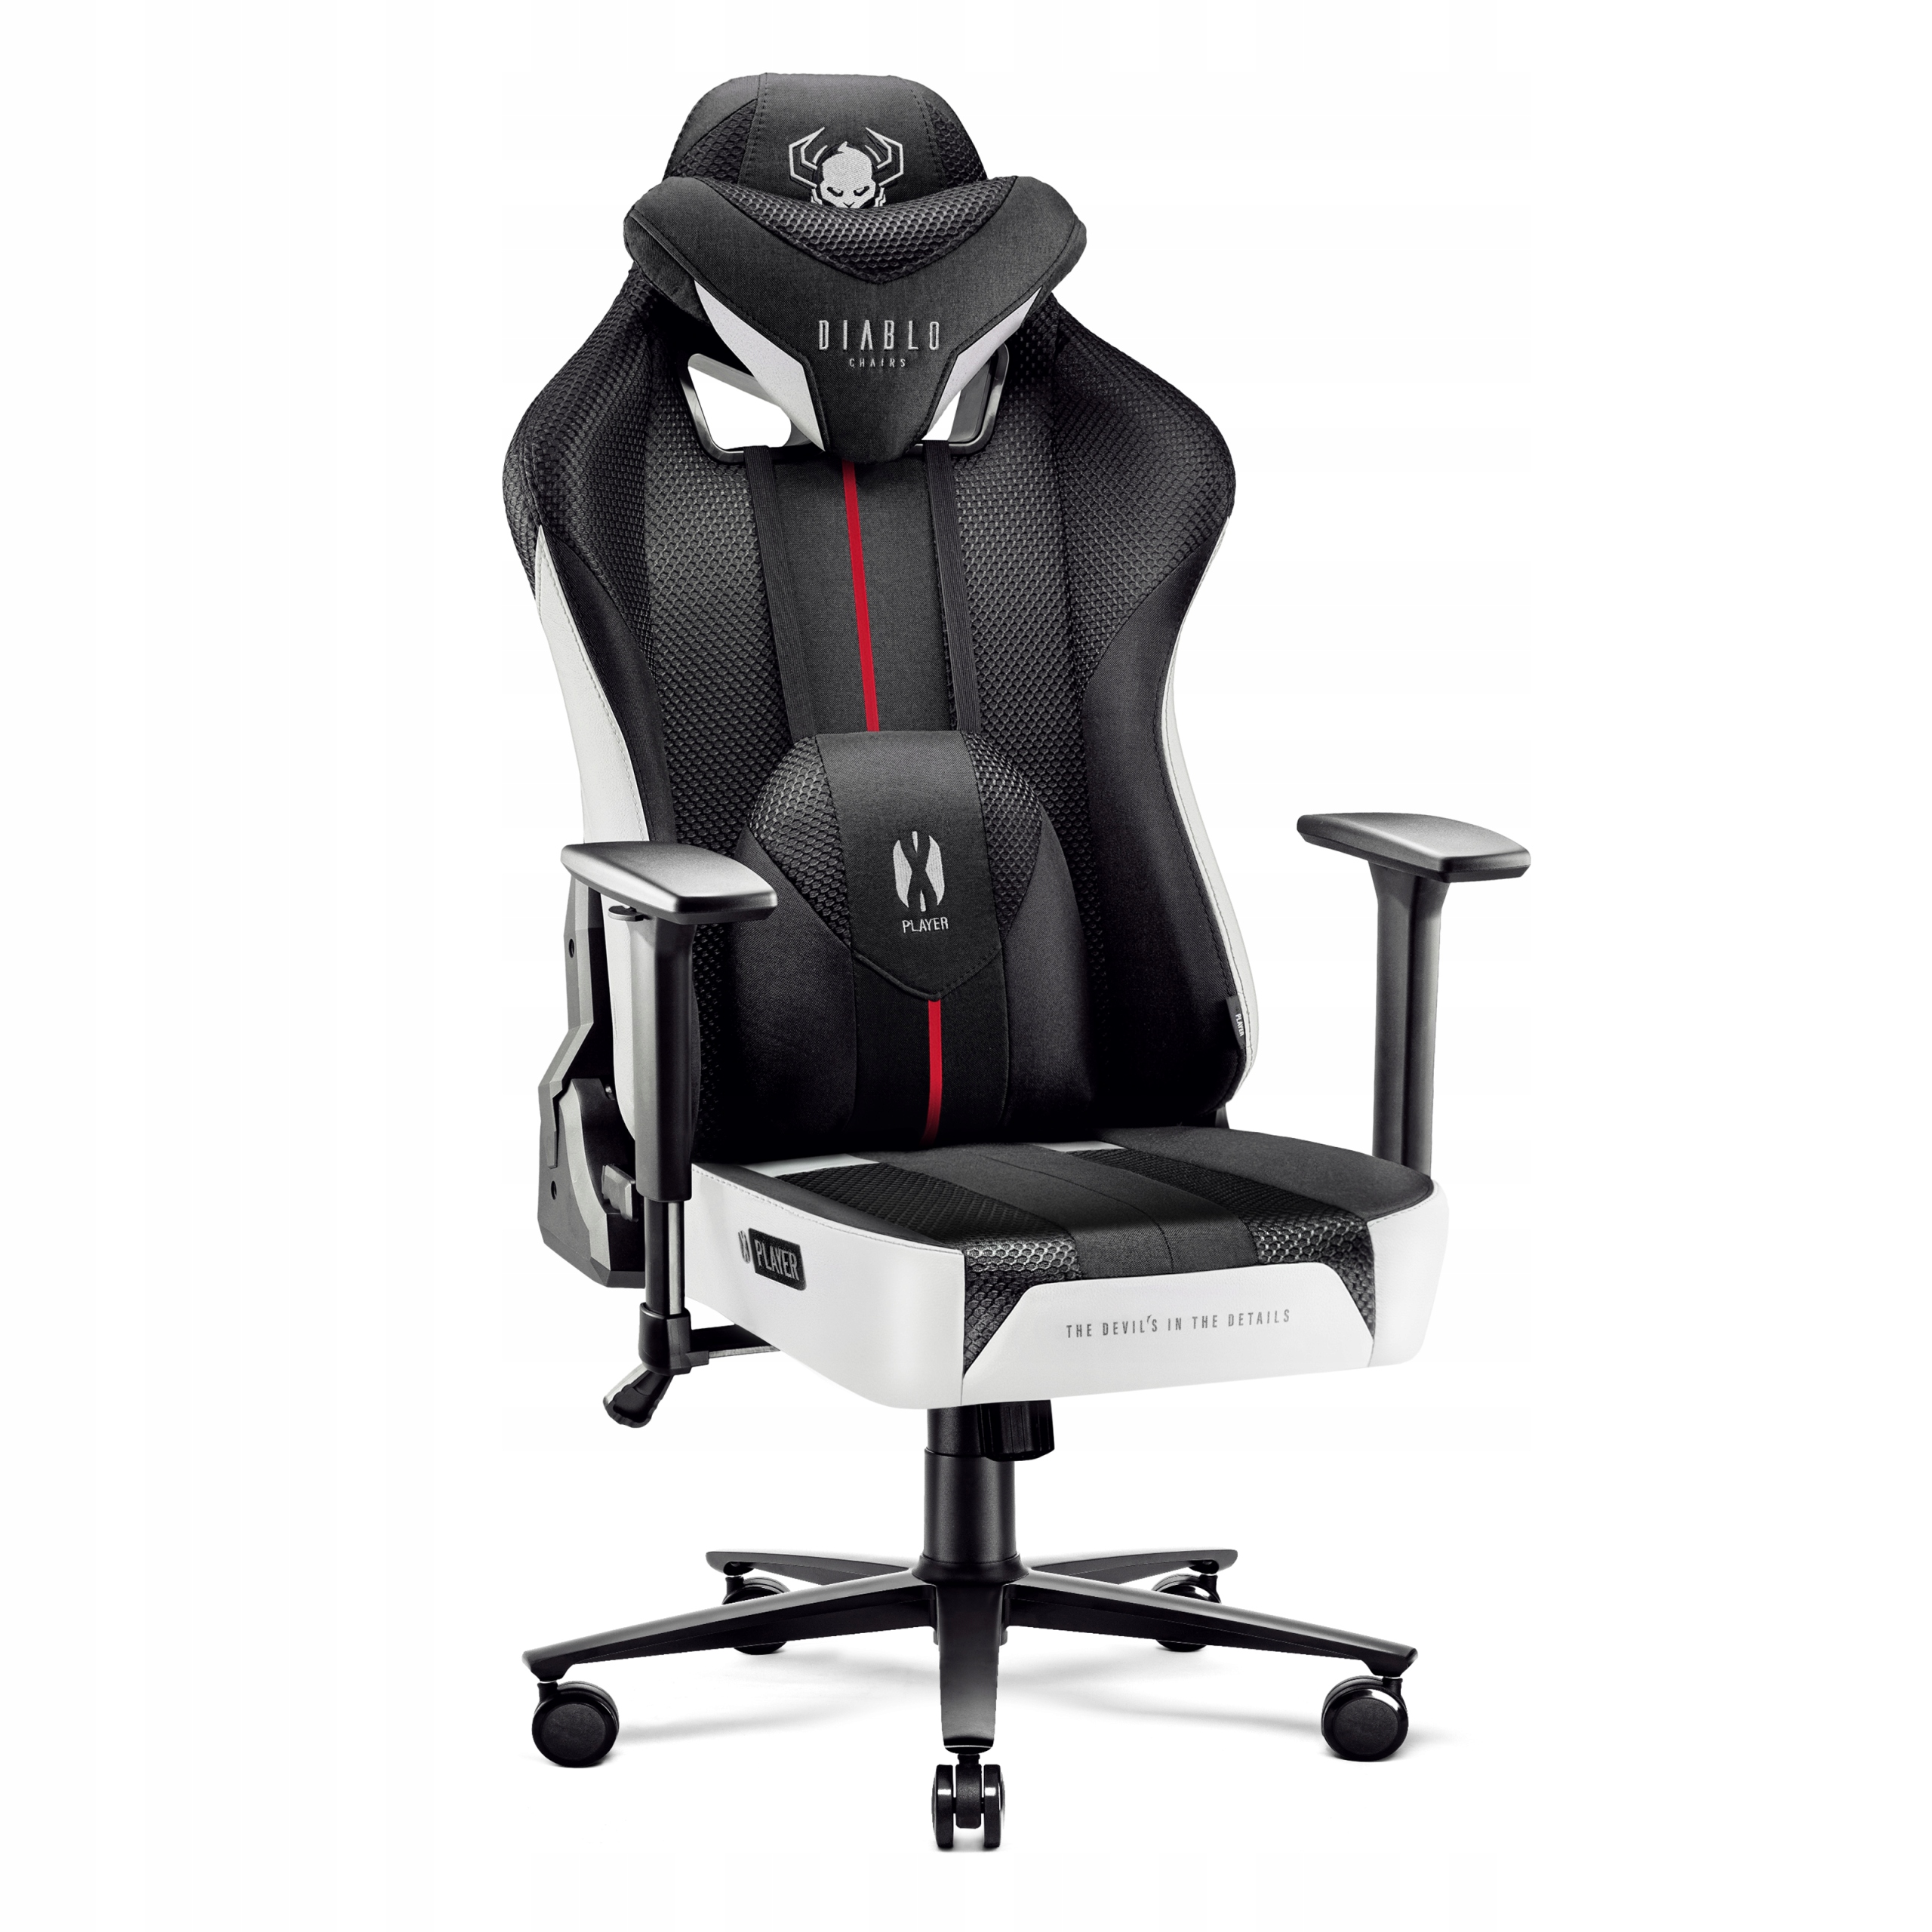 Herní židle Diablo Chairs X-Player 2.0, XL černá/bílá